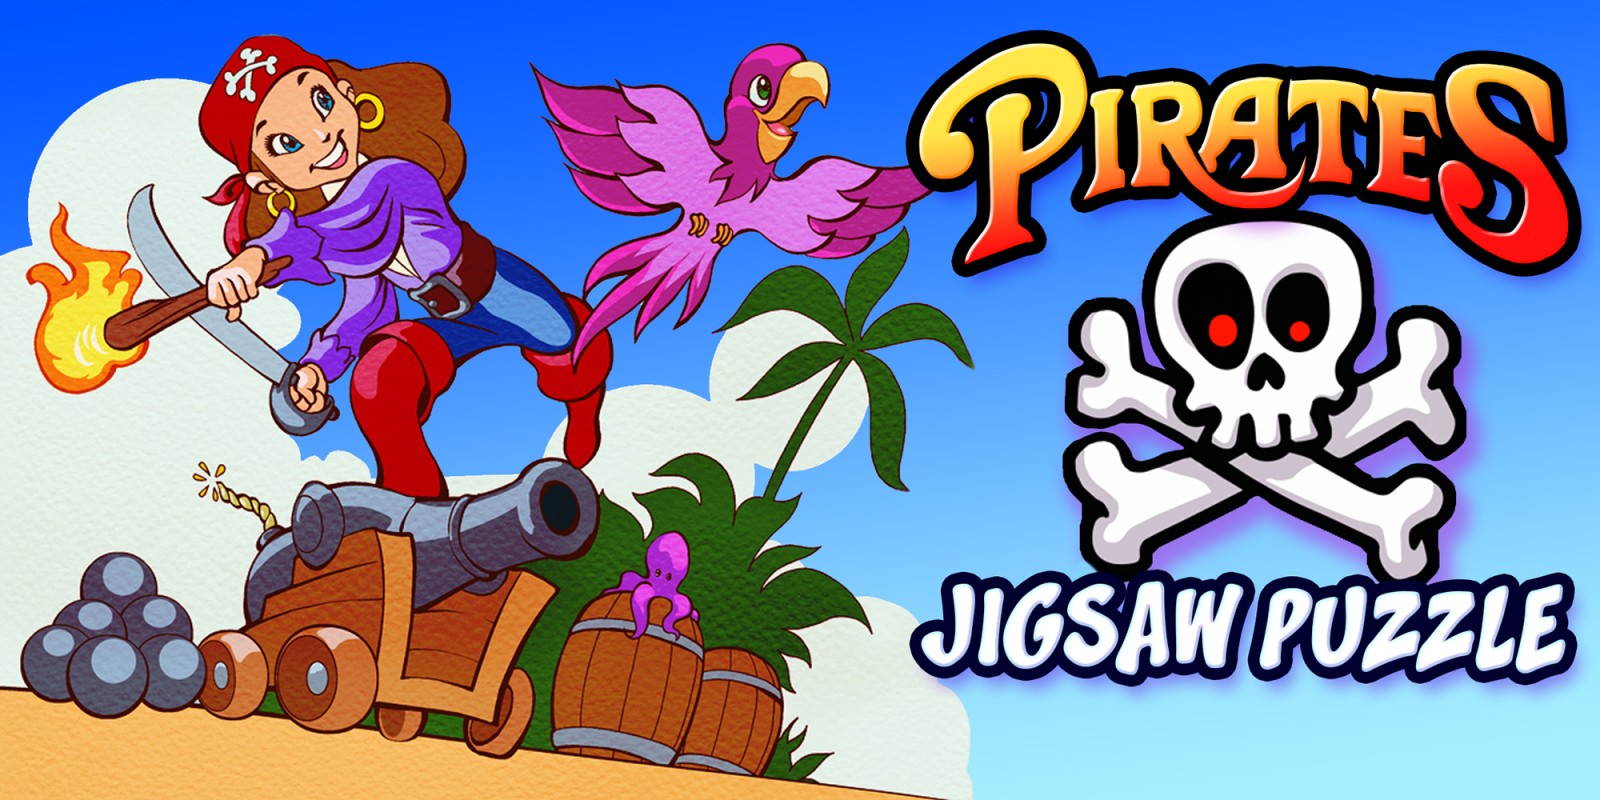 Pirates Jigsaw Puzzle - pirati puzzle istruzione avventura apprendimento bambini puzzle giochi per bambini e ragazzi